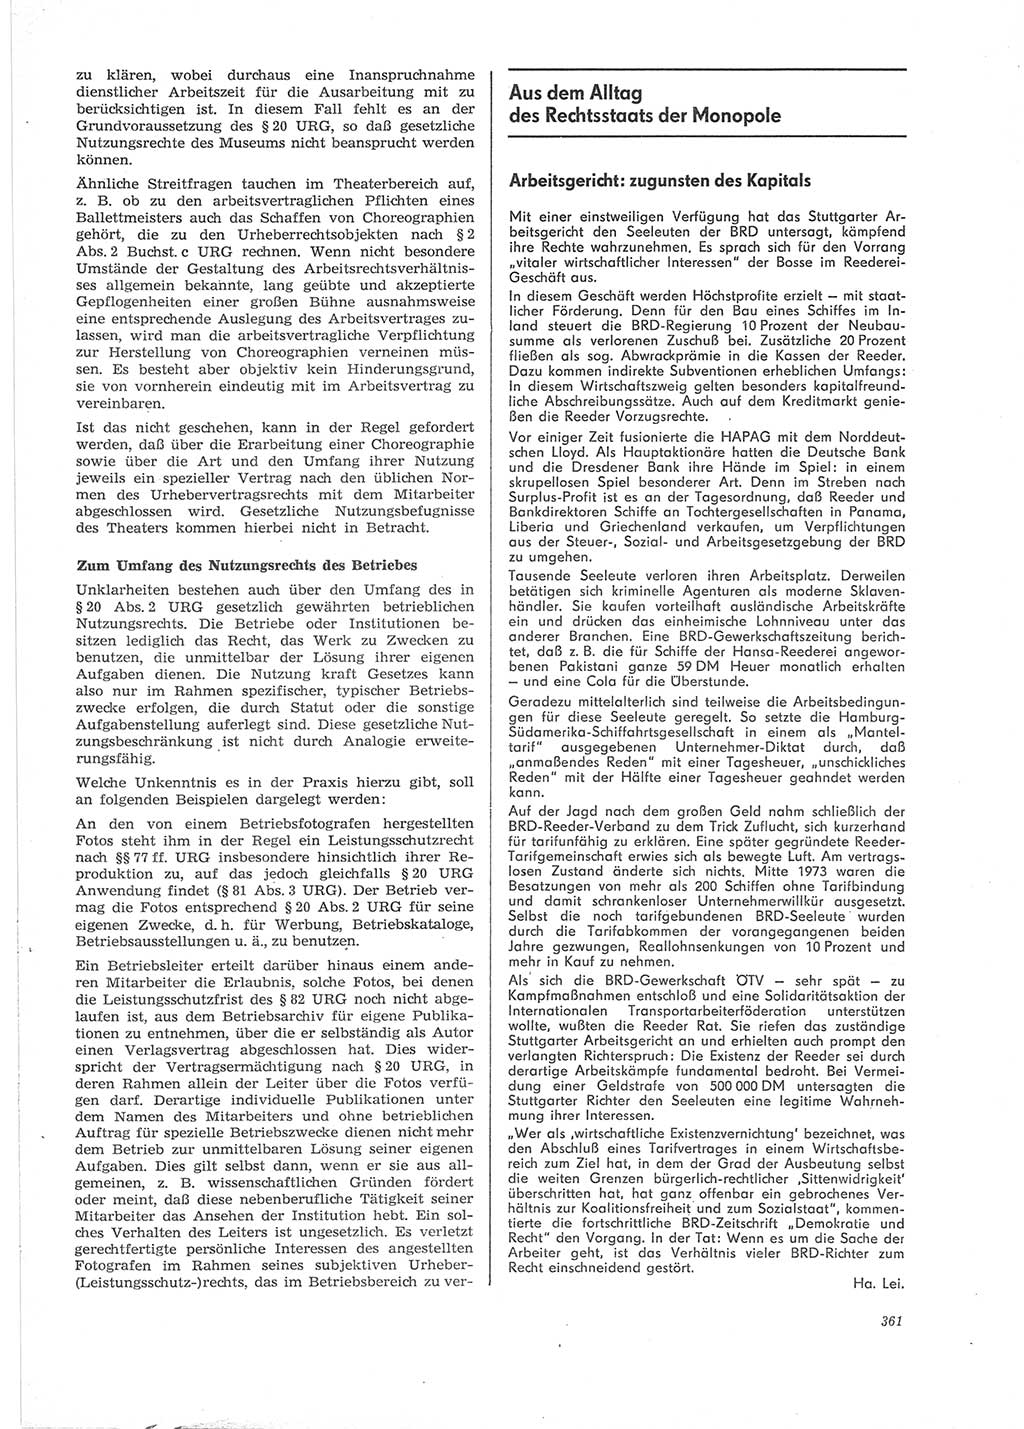 Neue Justiz (NJ), Zeitschrift für Recht und Rechtswissenschaft [Deutsche Demokratische Republik (DDR)], 28. Jahrgang 1974, Seite 361 (NJ DDR 1974, S. 361)